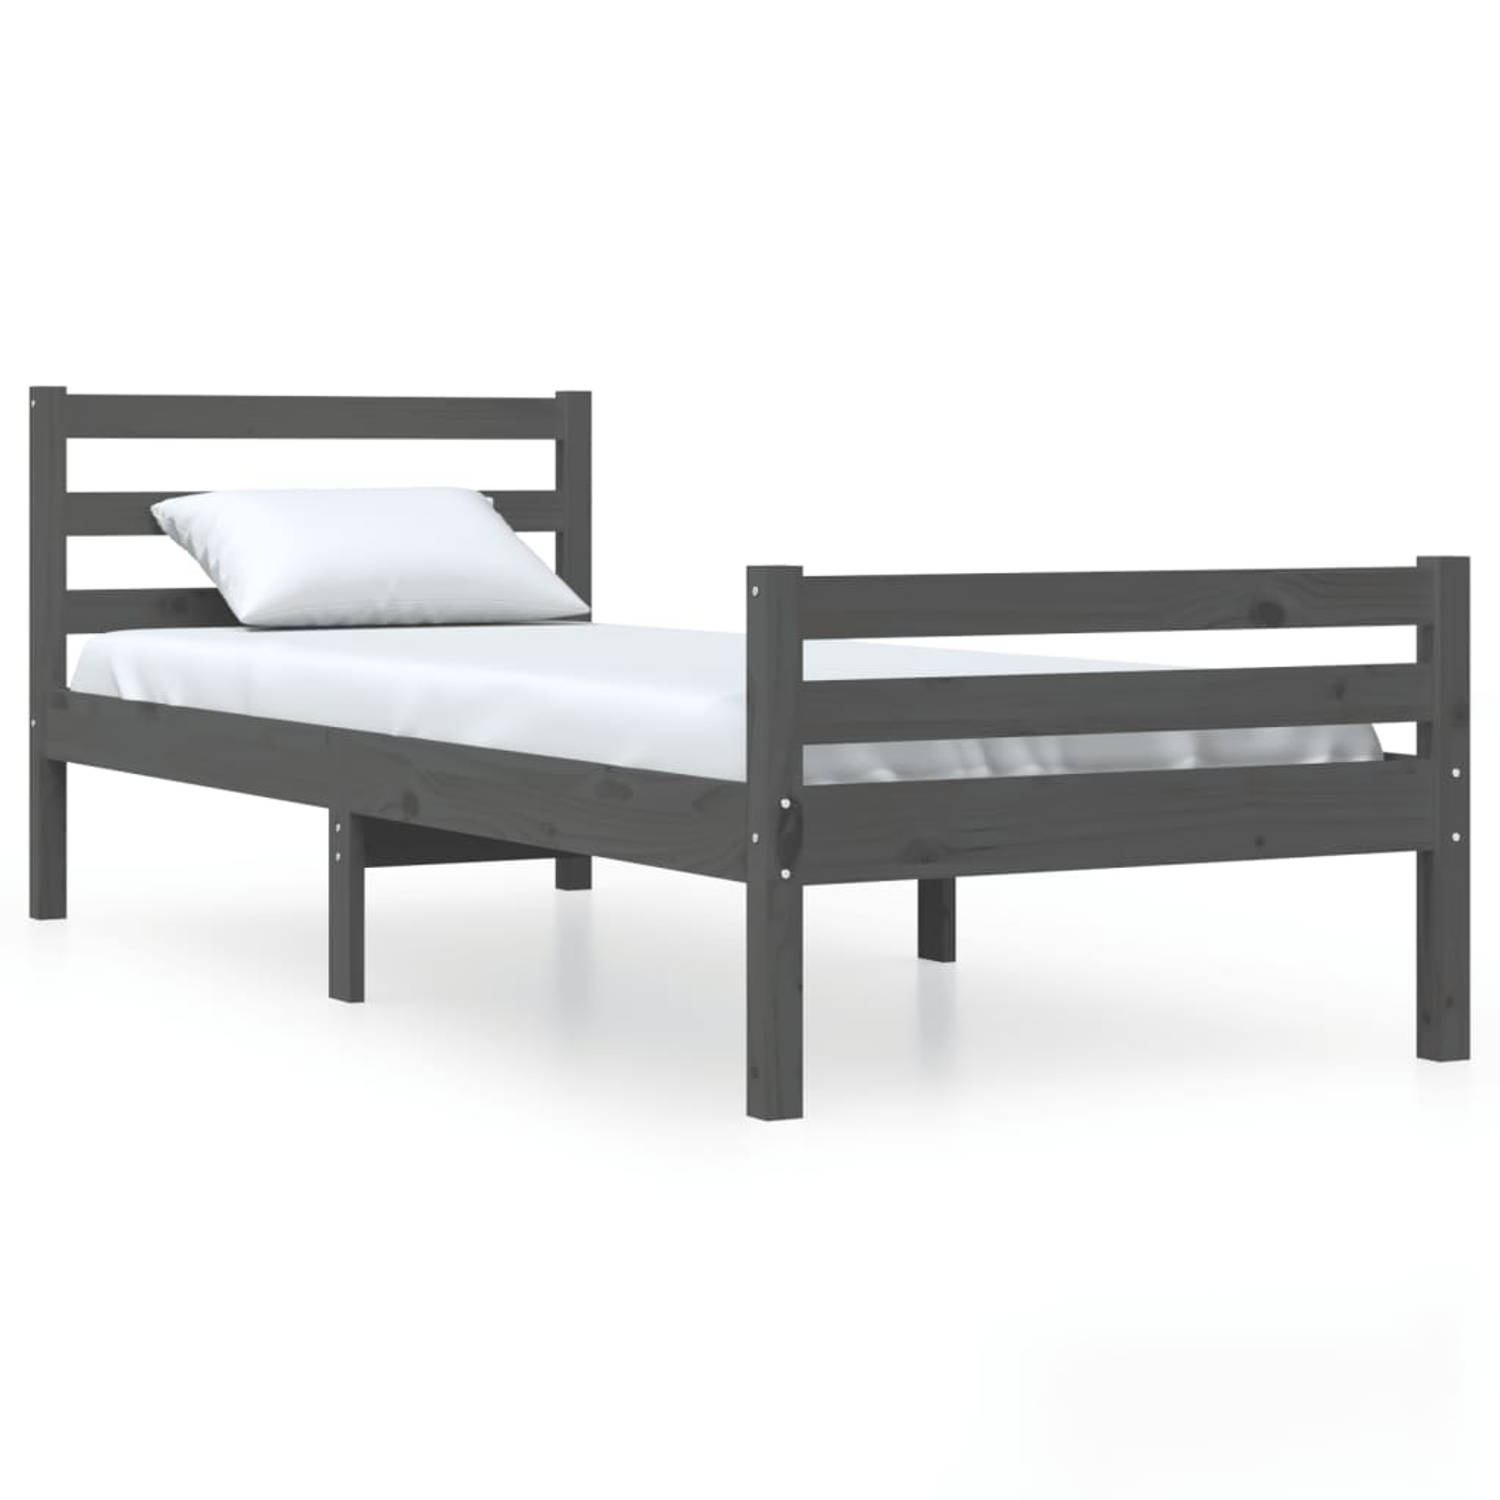 The Living Store Bedframe massief hout grijs 90x200 cm - Bedframe - Bedframes - Bed - Bedbodem - Ledikant - Bed Frame - Massief Houten Bedframe - Slaapmeubel - Eenpersoonsbed - Bed